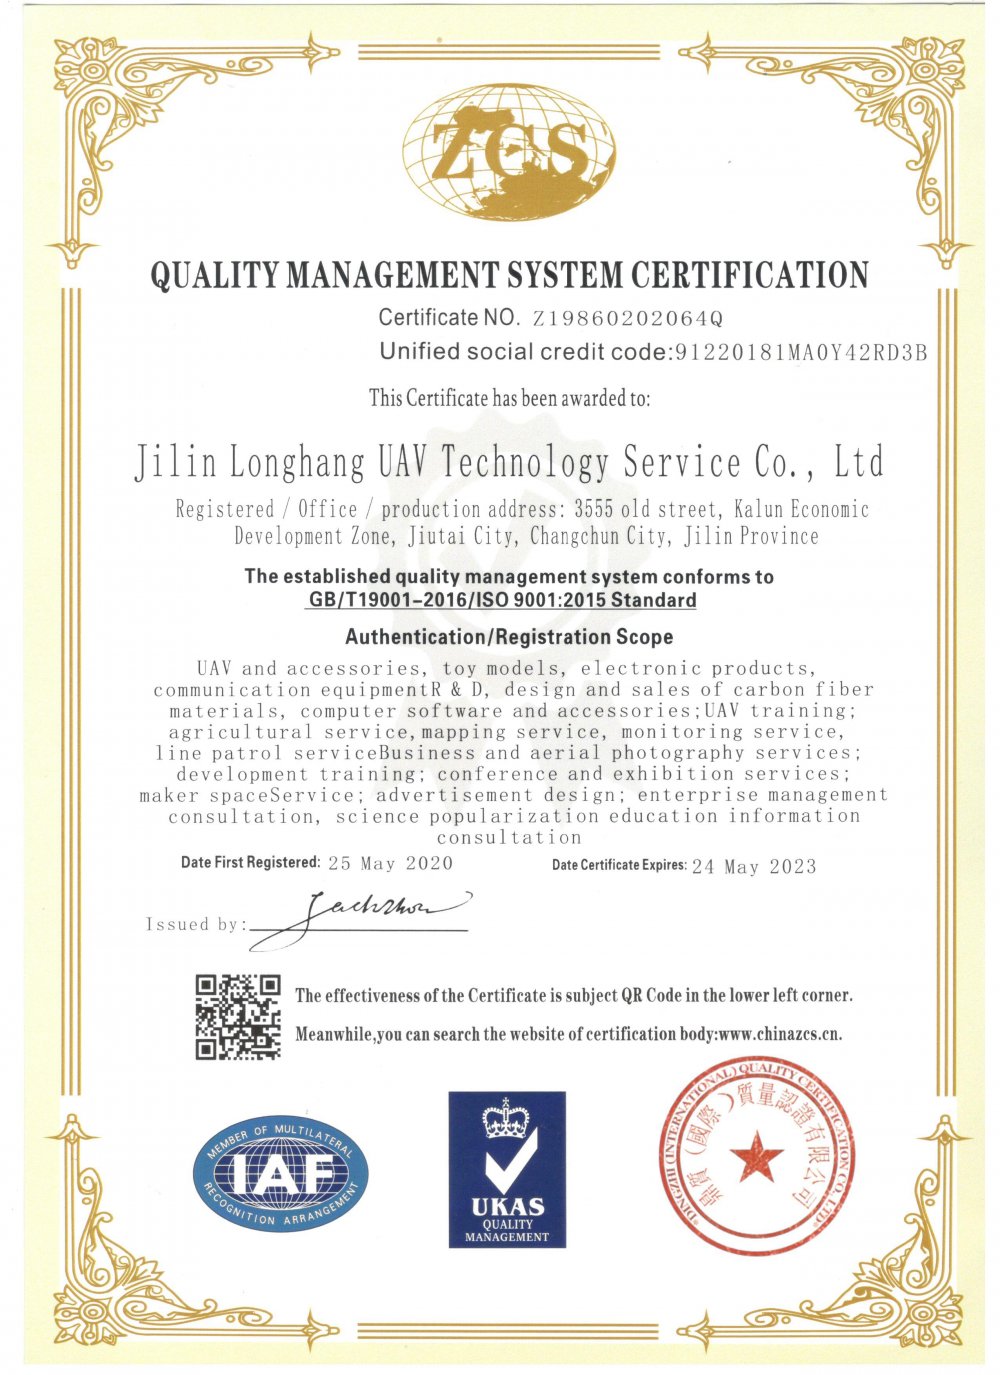 质量管理体系认证证书-英文版.jpg